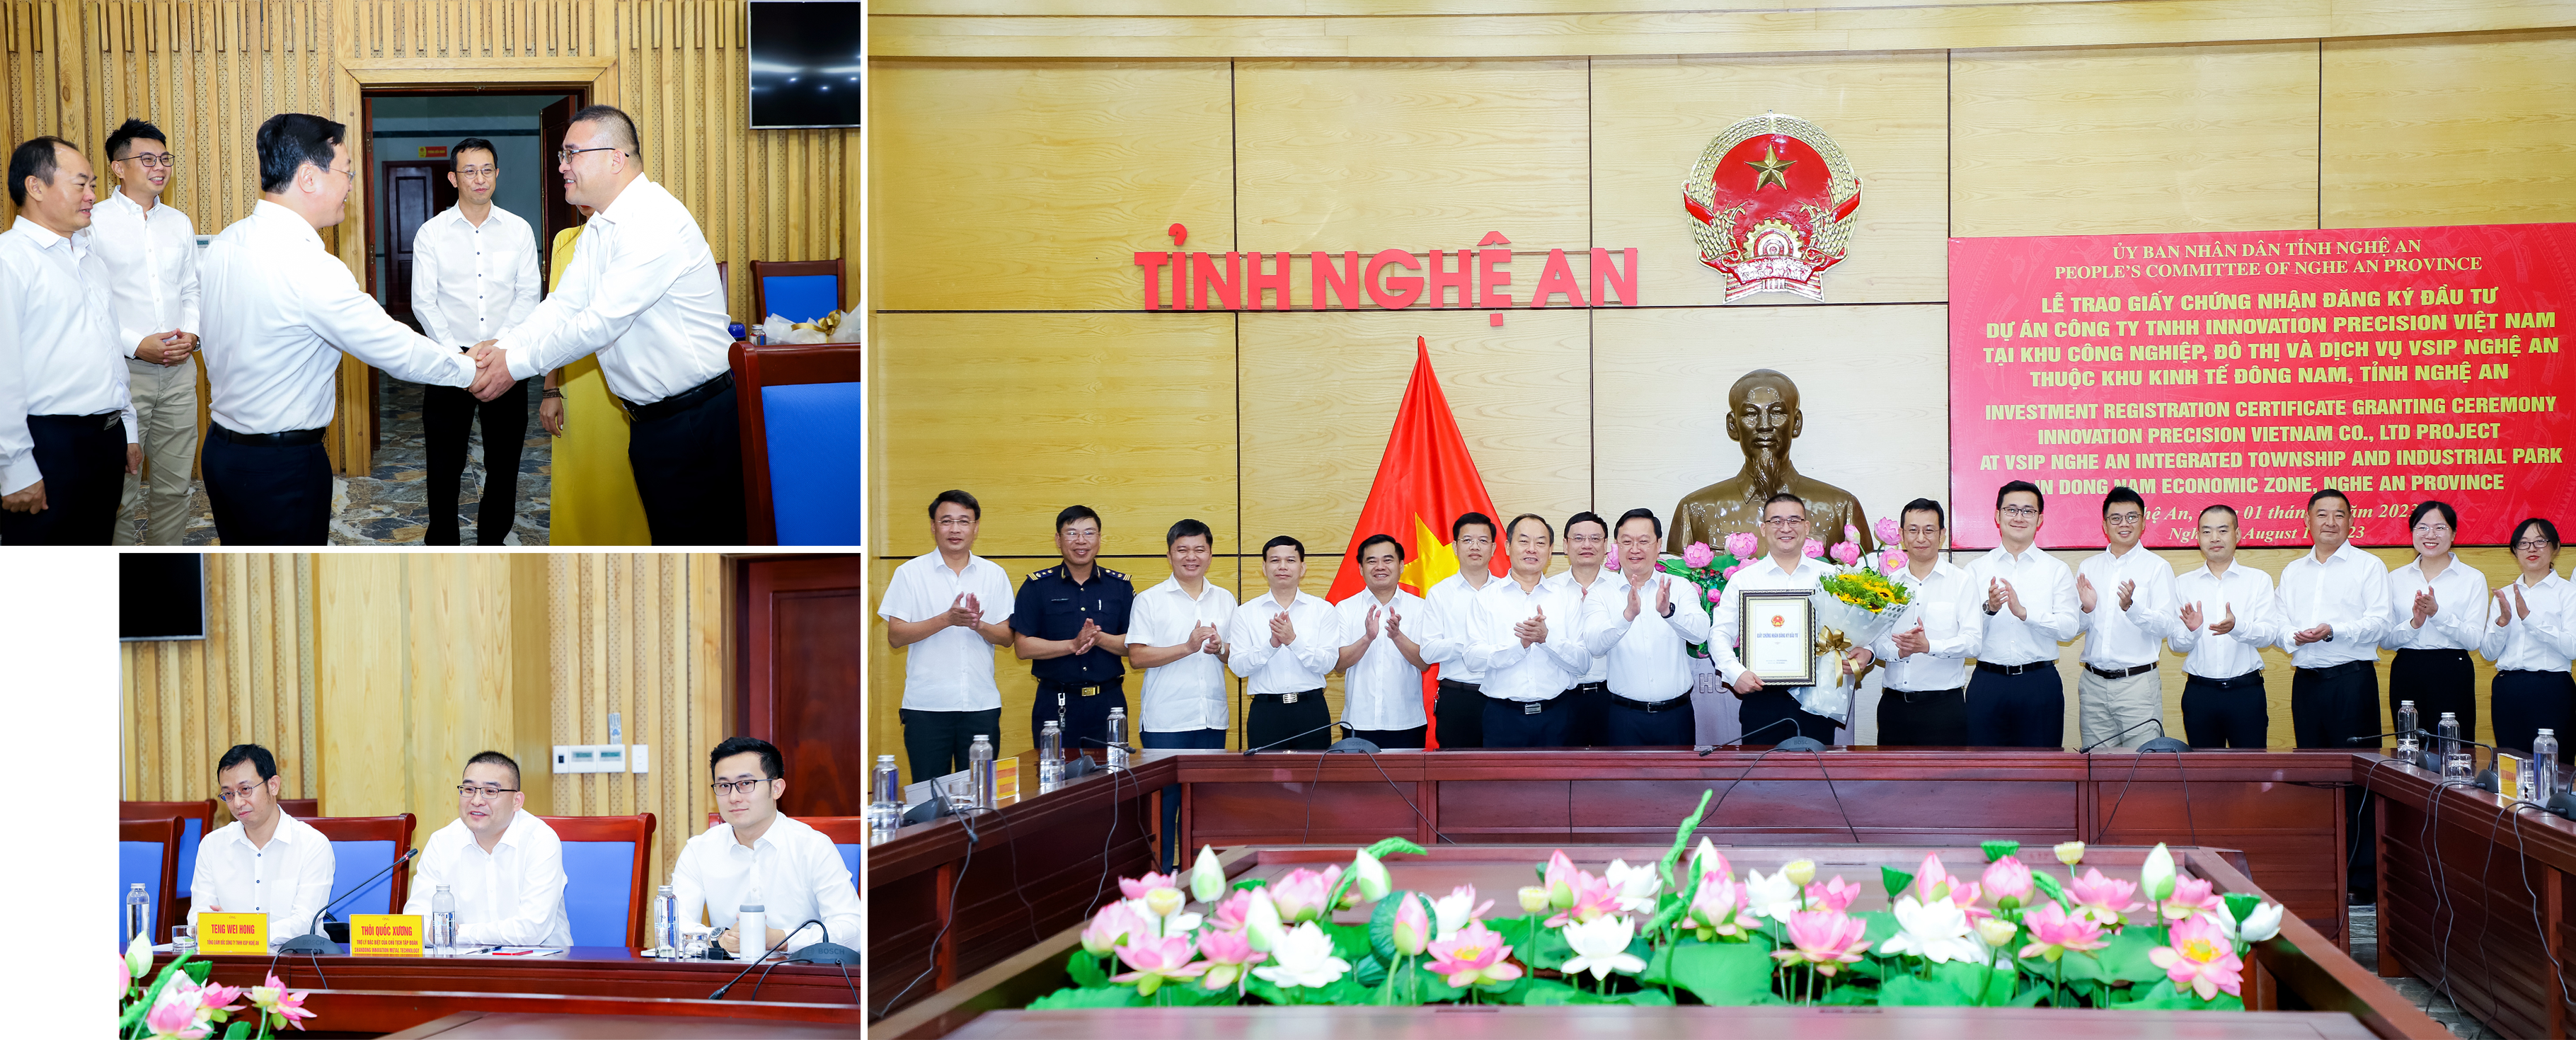 Chủ tịch UBND tỉnh Nguyễn Đức Trung trao giấy chứng nhận đăng ký đầu tư, tặng hoa cho Tập đoàn Shandong Innovation Metal Technology. Ảnh: Phạm Bằng